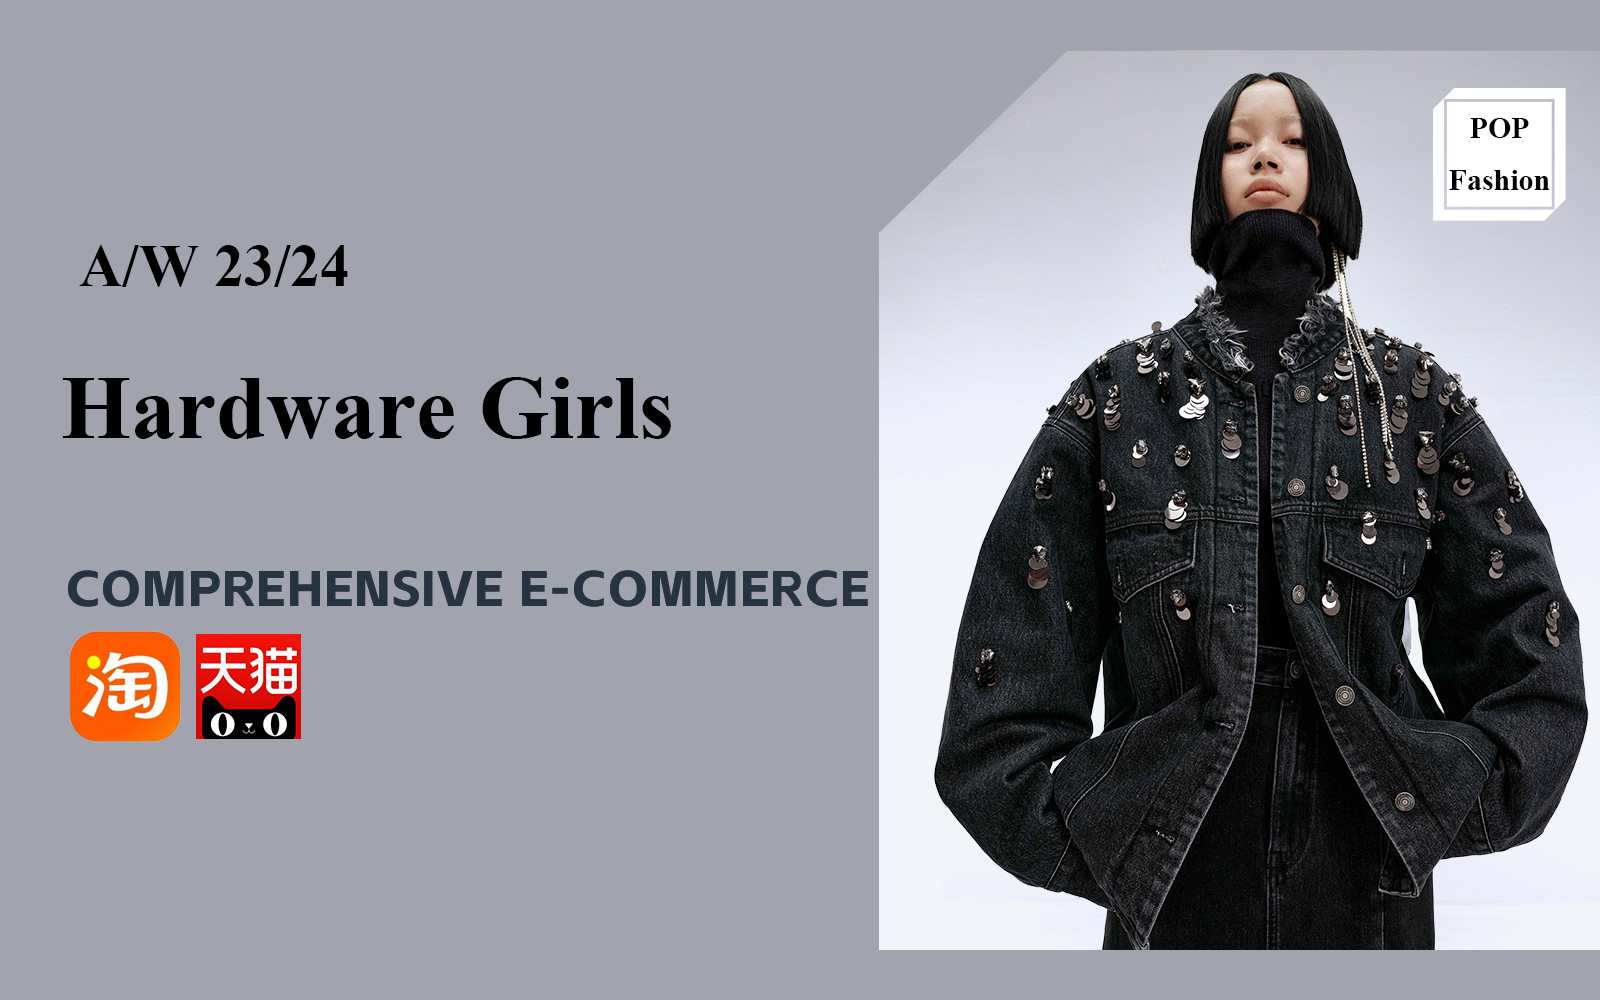 Hardware Girl -- The Popular Style of Women's E-Commerce Brands